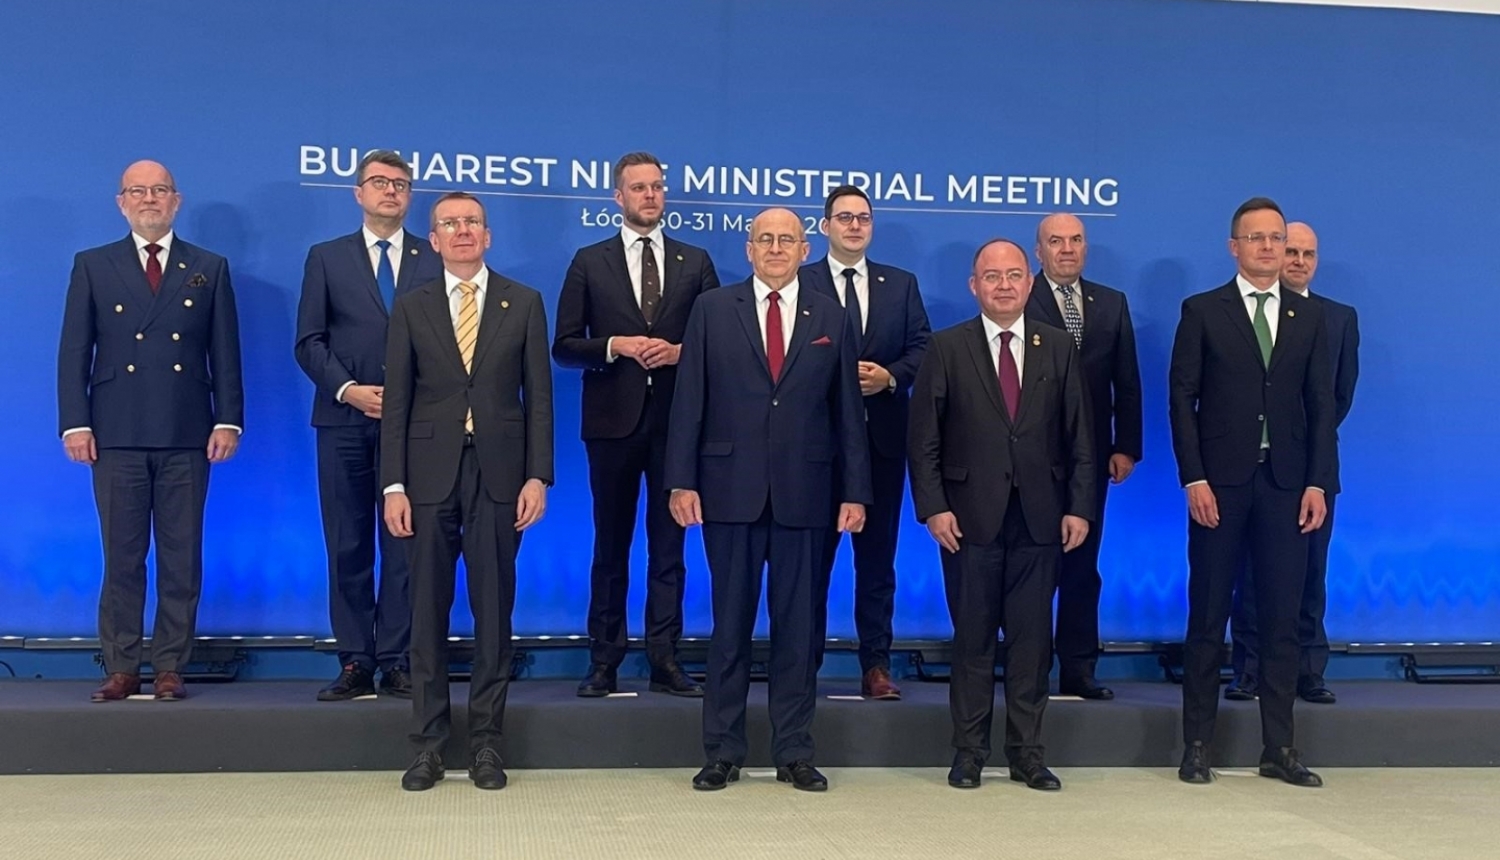 Ārlietu ministrs Bukarestes devītnieka sanāksmē Lodzā aicina domāt par NATO–Ukrainas politisko un praktisko sadarbību ilgtermiņā